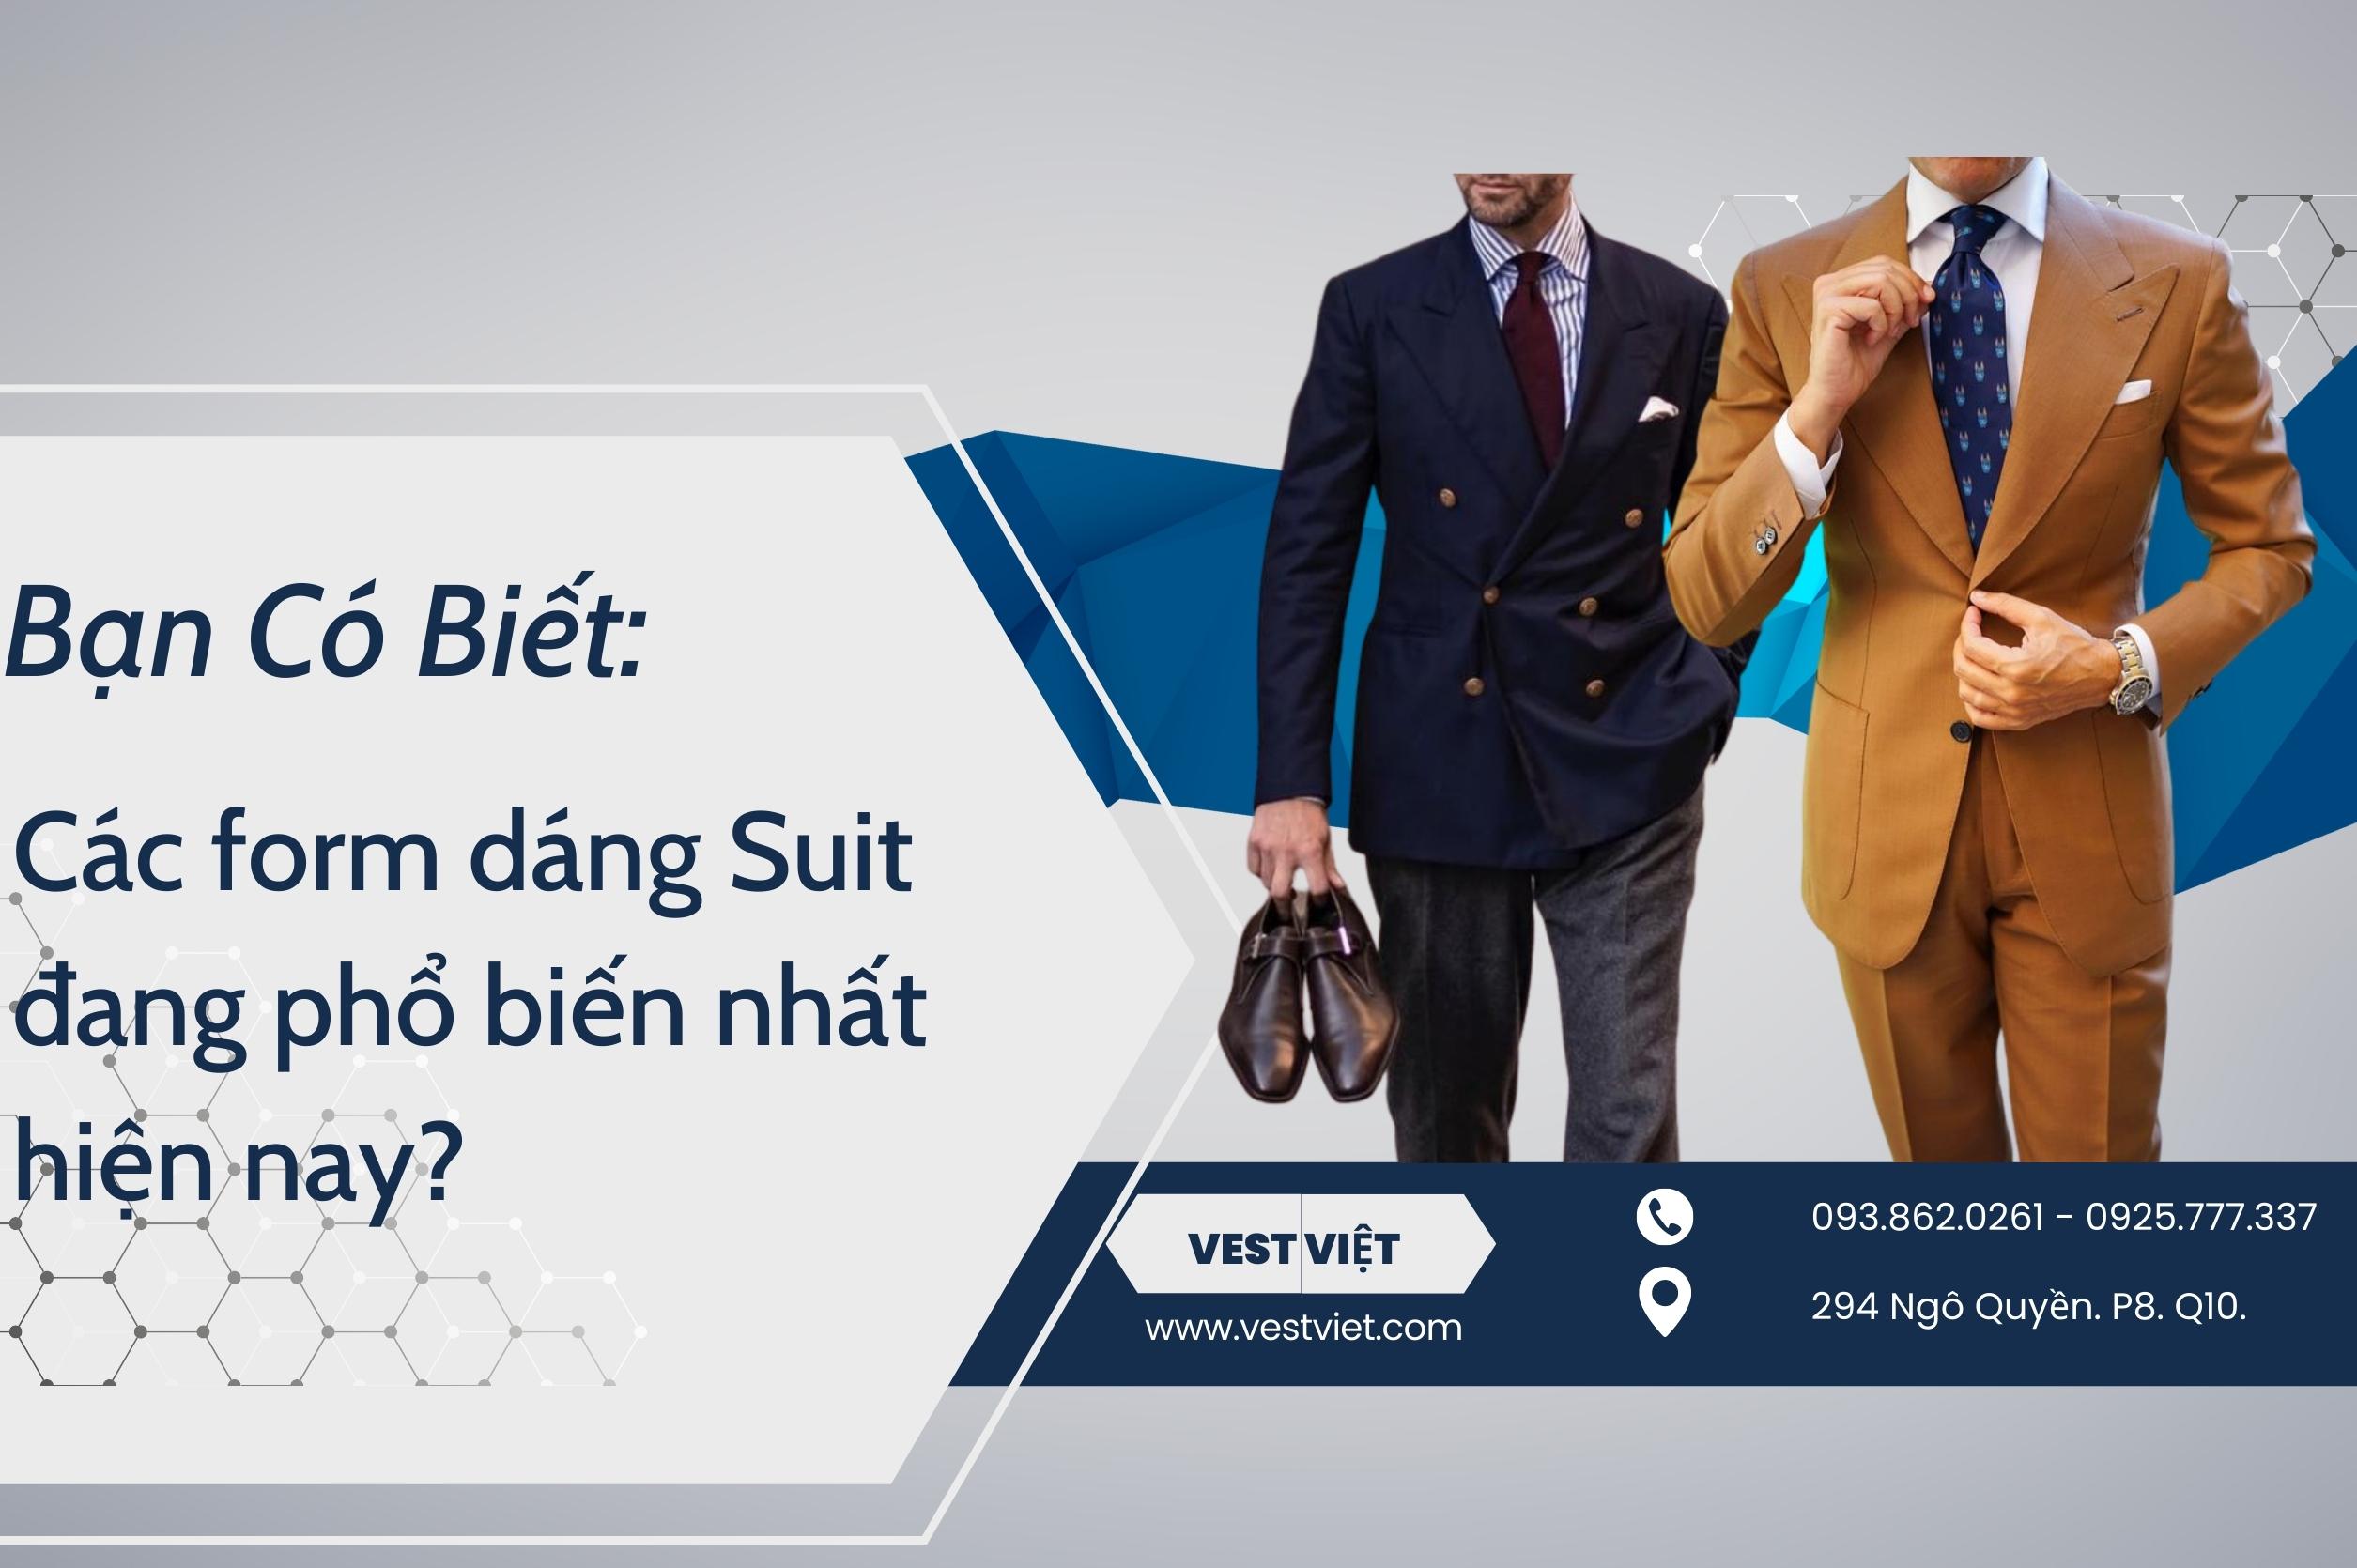 Bạn Có Biết: Các form dáng Suit đang phổ biến nhất hiện nay?